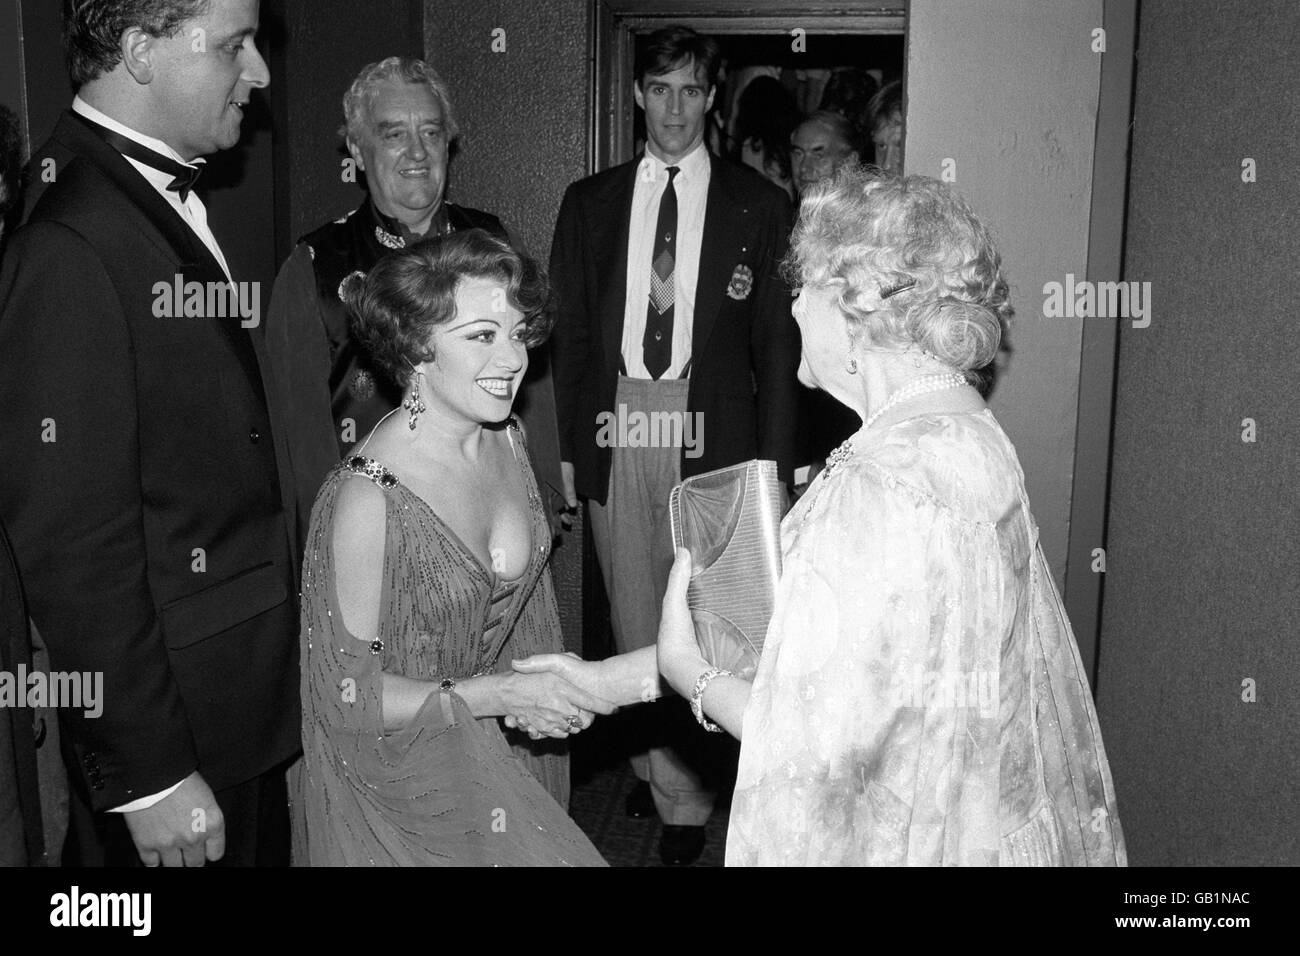 Die Queen Mother rundete ihre 89. Geburtstagsfeier ab und trifft die Stars der Show "Anything goes", nachdem sie eine Aufführung im Londoner West End gesehen hatte. Elaine Paige (c), Bernard Gibbins (zweiter von links) und Howard McGillin (r) sind ebenfalls abgebildet. Stockfoto